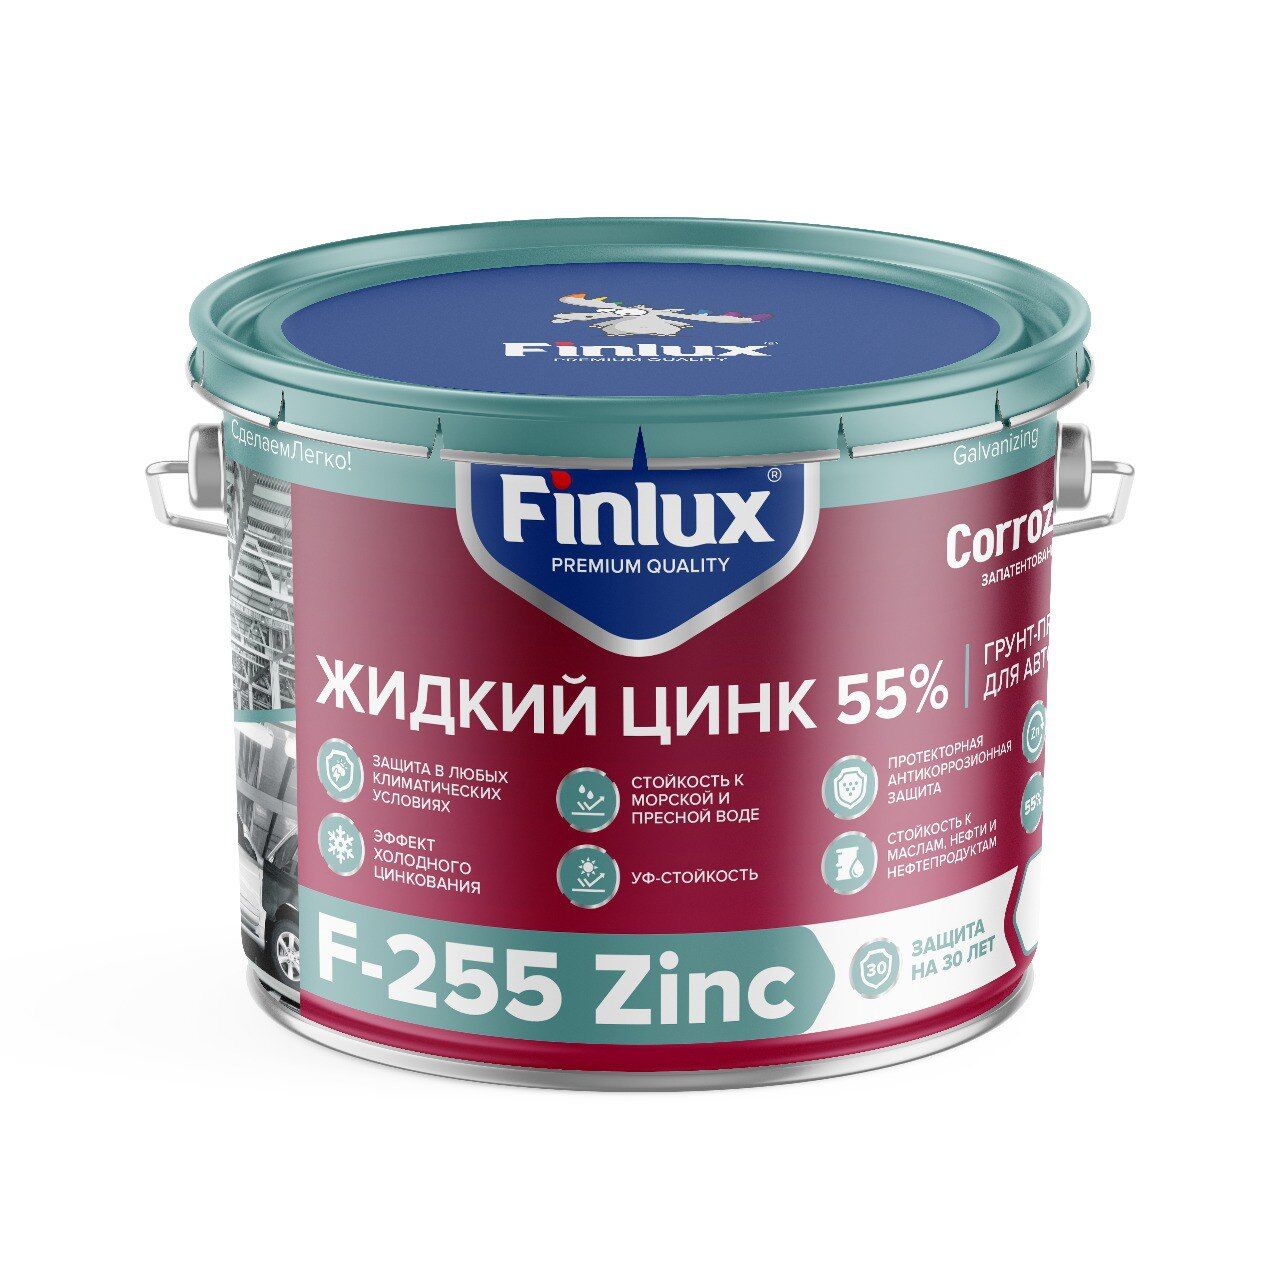 Цинконаполненный грунт-протектор для антикоррозионной защиты металла от ржавчины Finlux F-255 Zinc CorrozoStop 6 кг